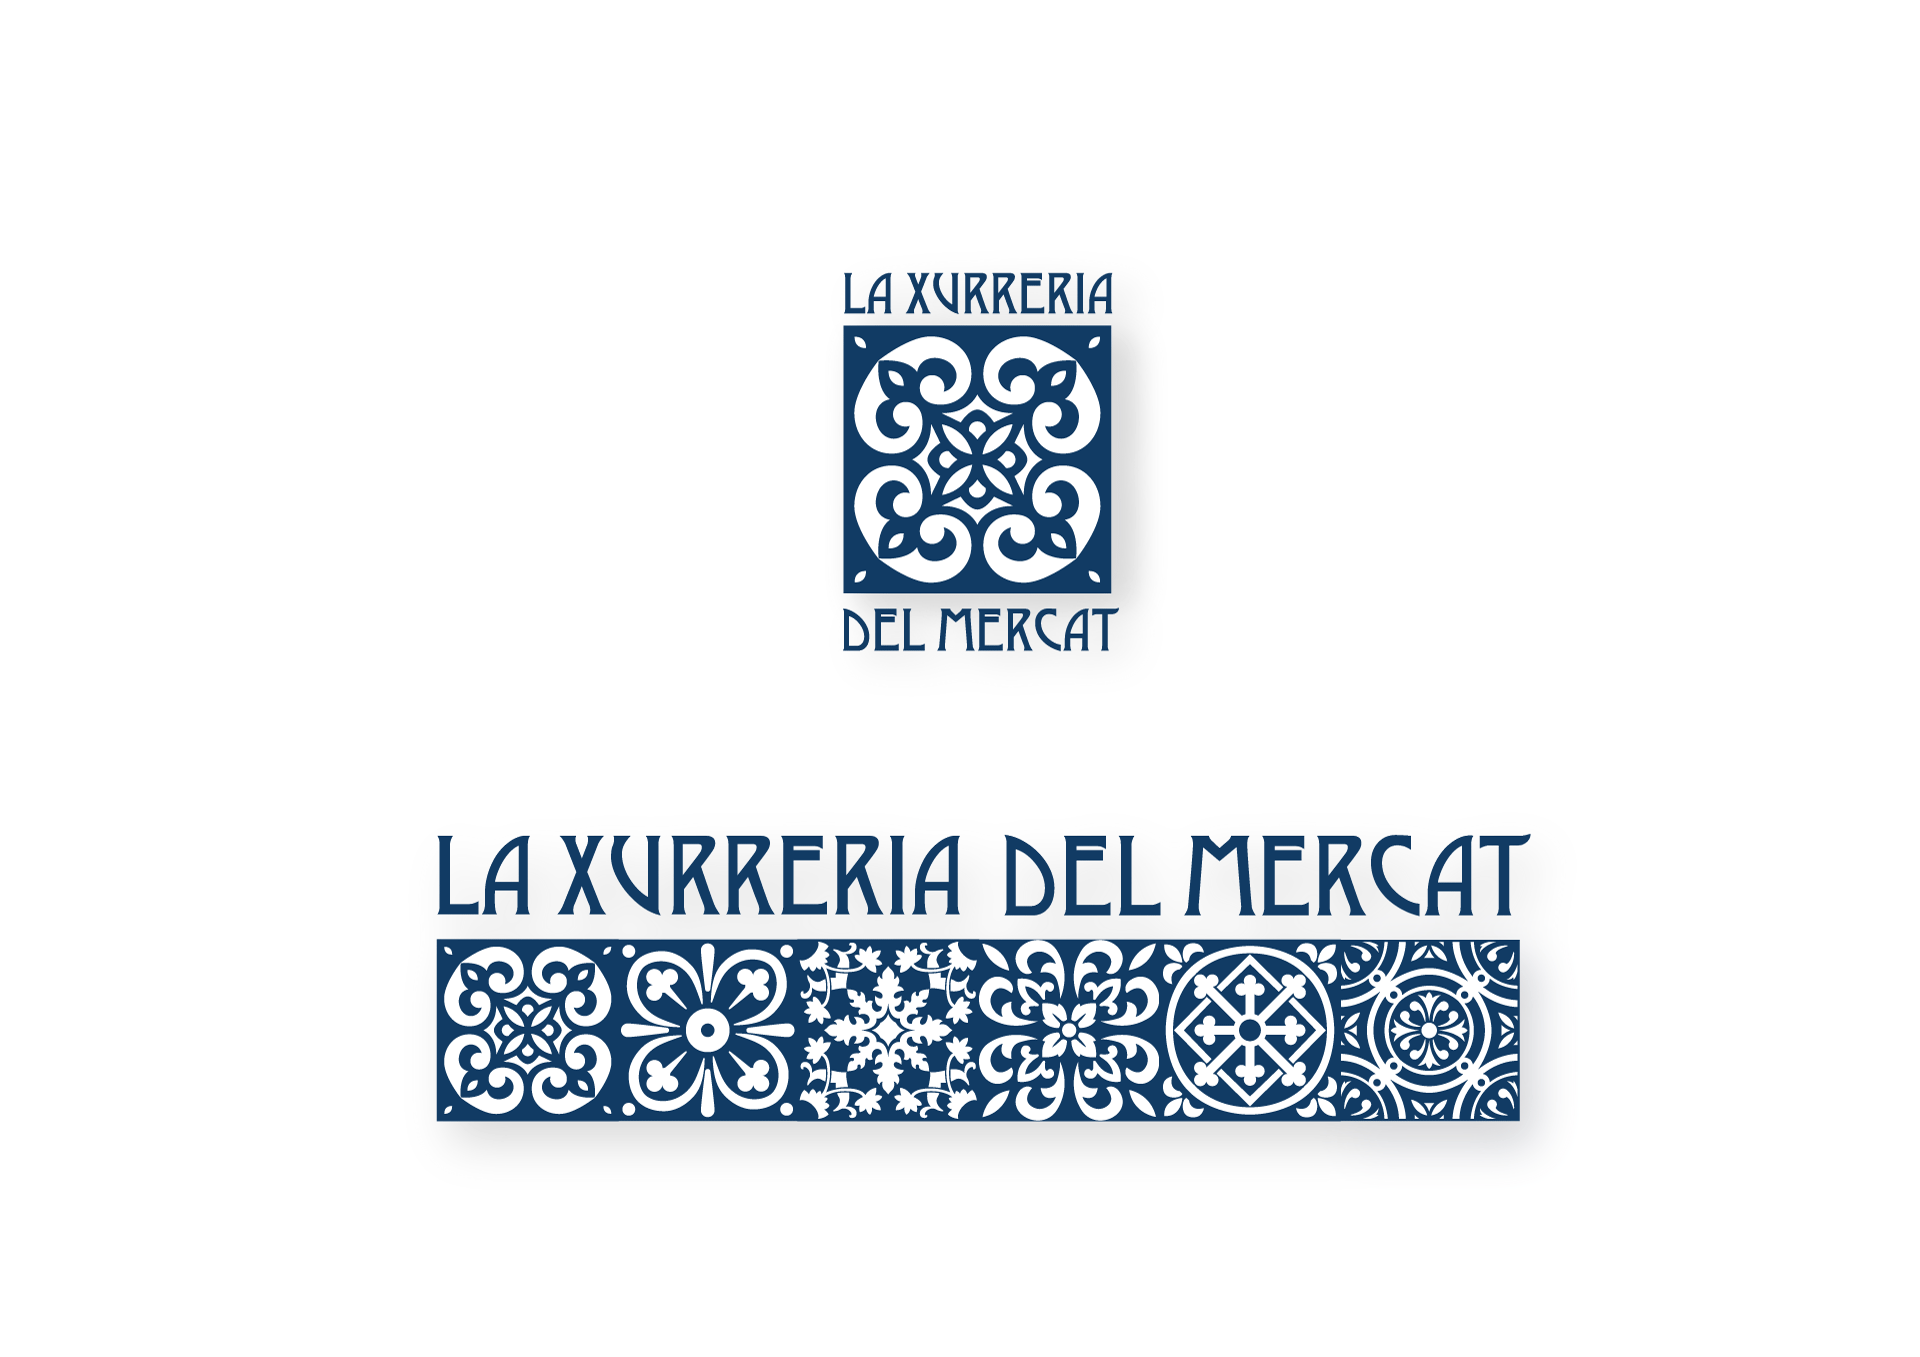 Imagen de marca La Xurreria del Mercat